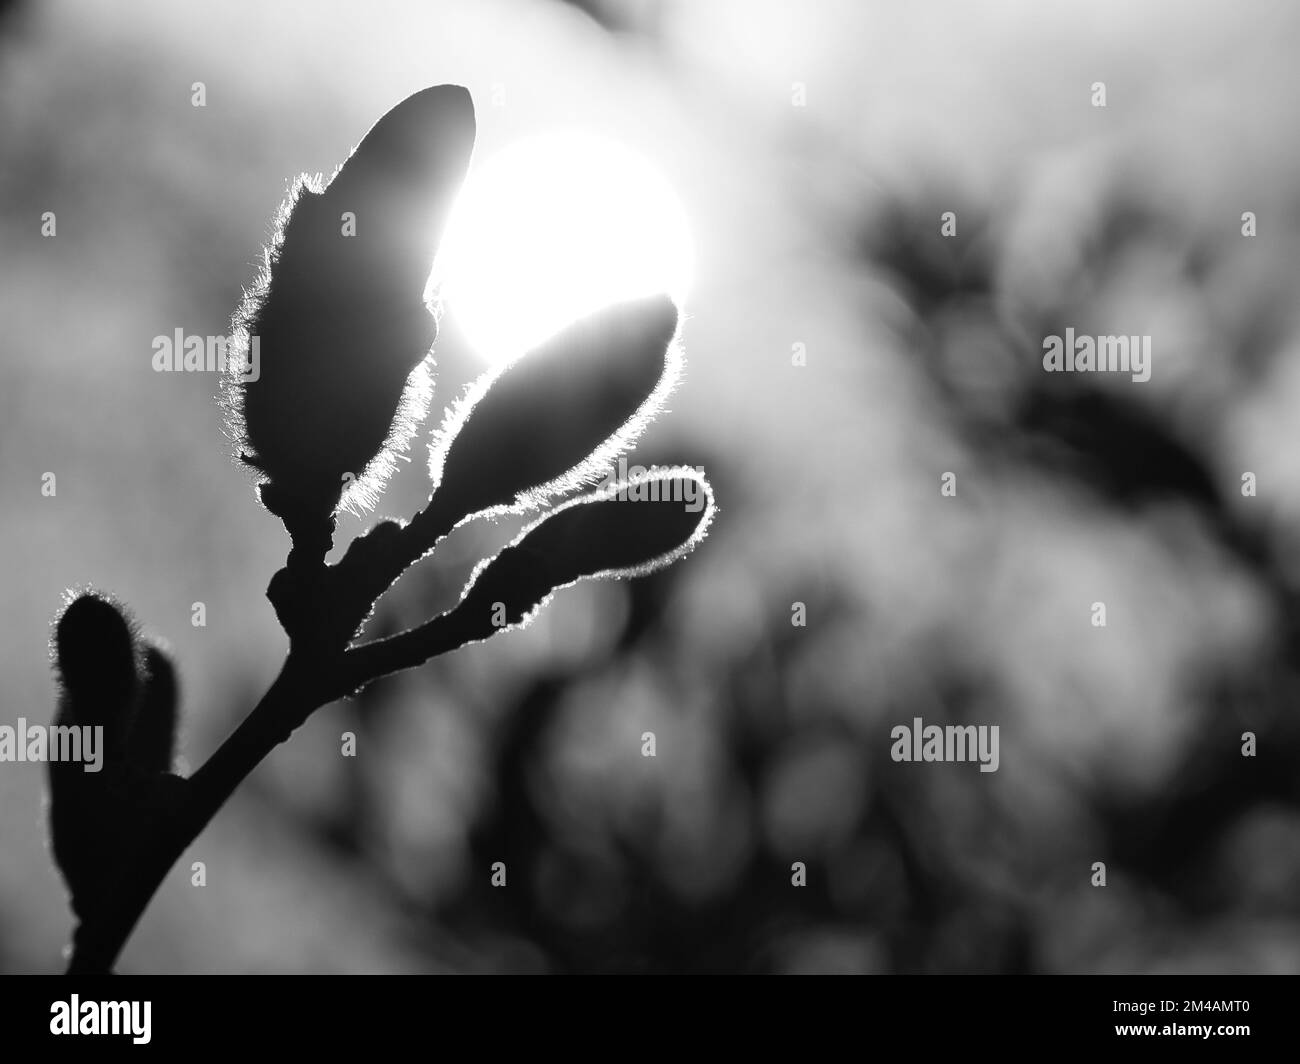 Magnolienknospen auf einem Magnolienbaum in Schwarz-Weiß mit dem Mond im Hintergrund. Magnolienbäume sind in der Blütezeit eine wahre Pracht. Stockfoto